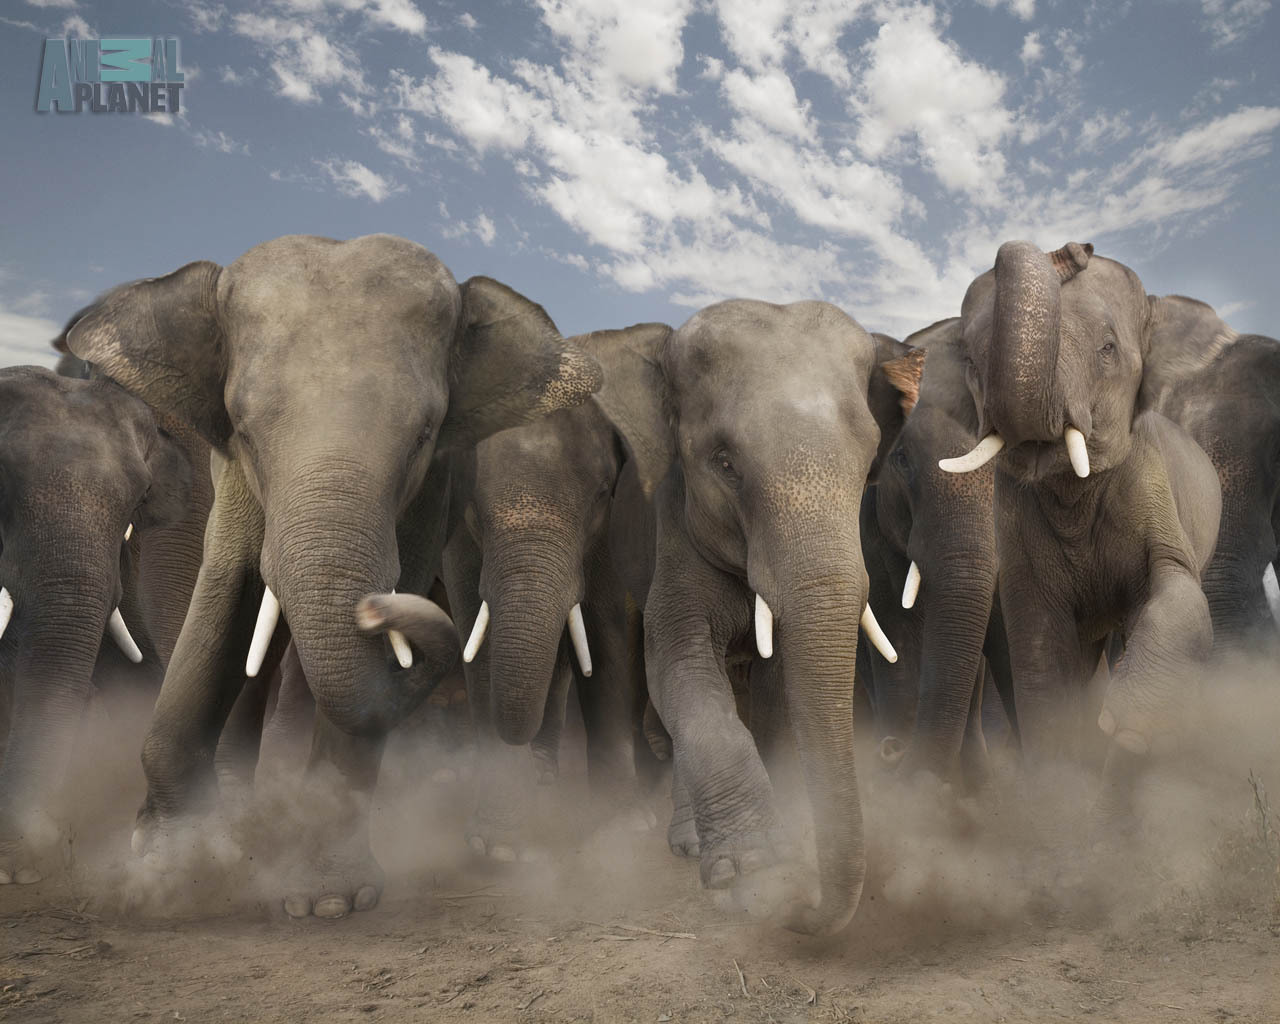 elephants, animals, orange High Definition image